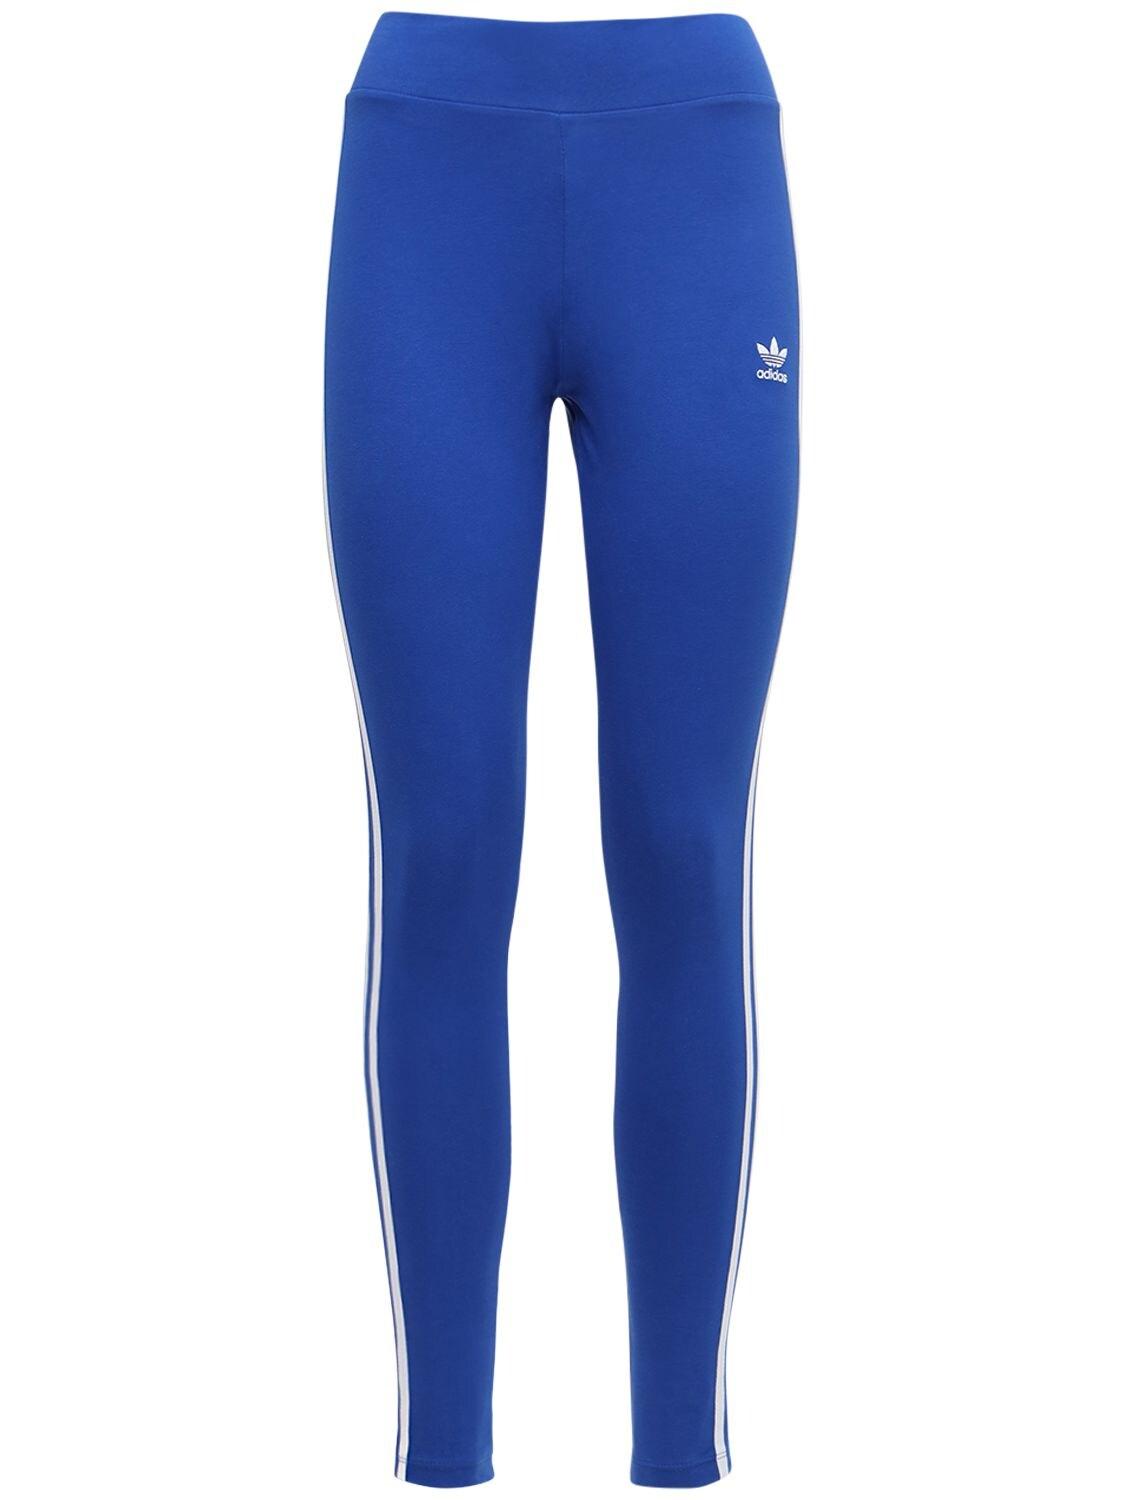 3 leggings in Lyst Blue Cotton Originals Tight Stripes | adidas